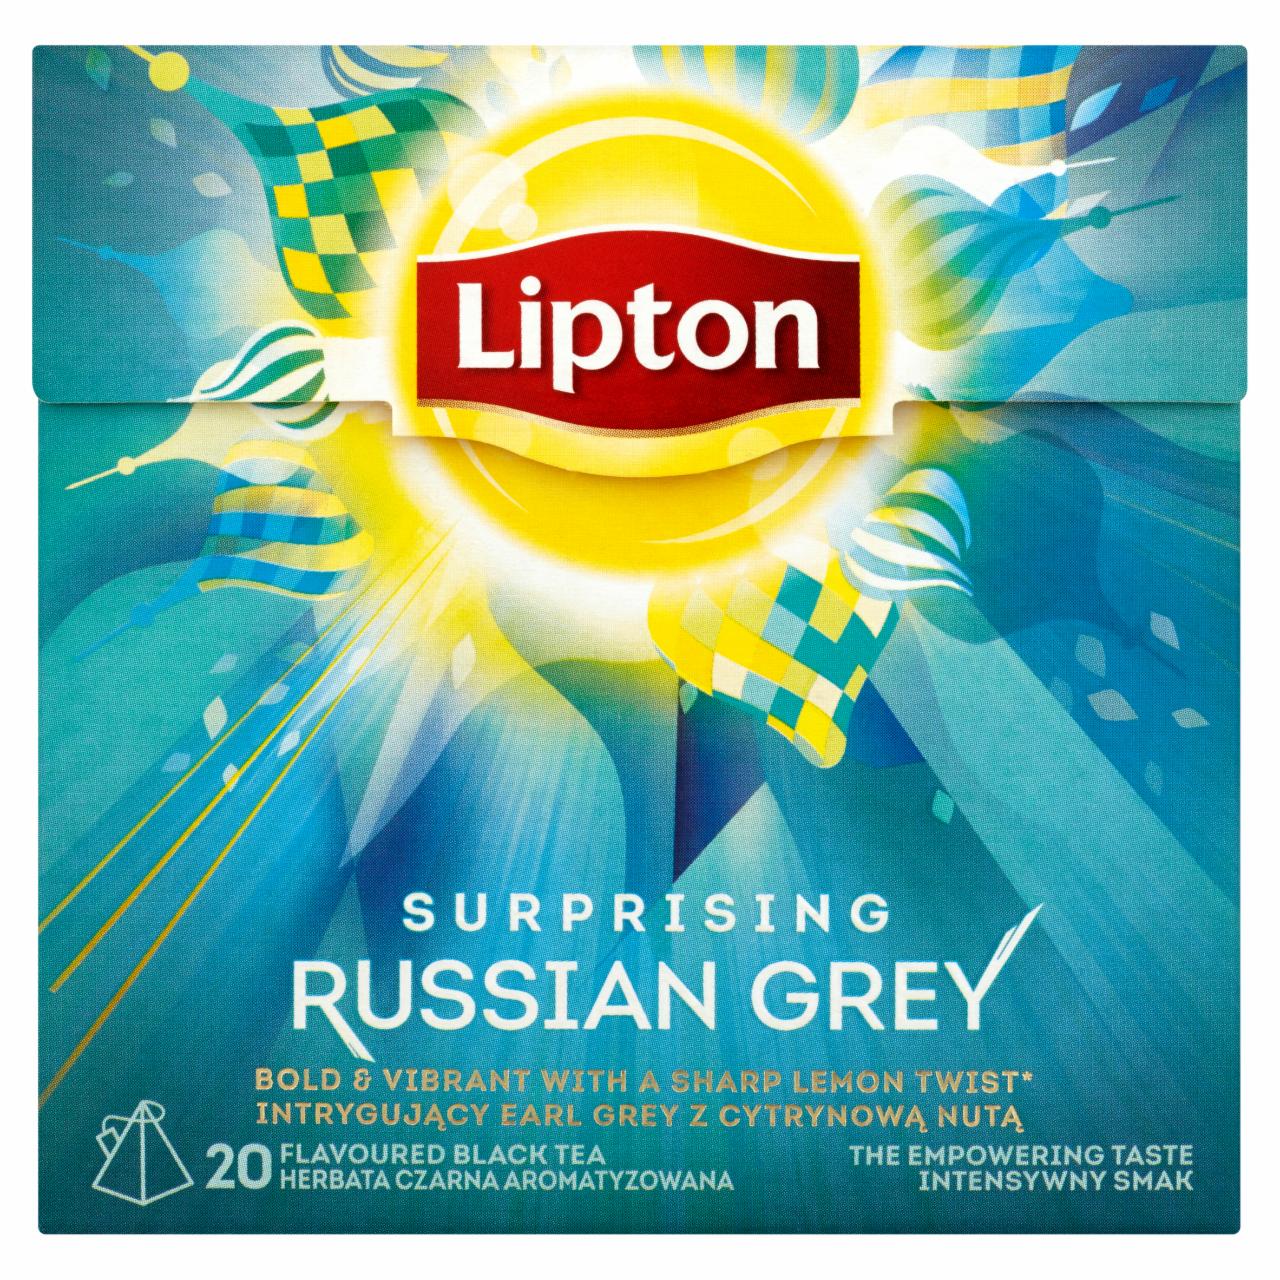 Zdjęcia - Lipton Surprising Russian Grey Herbata czarna aromatyzowana 34 g (20 torebek)